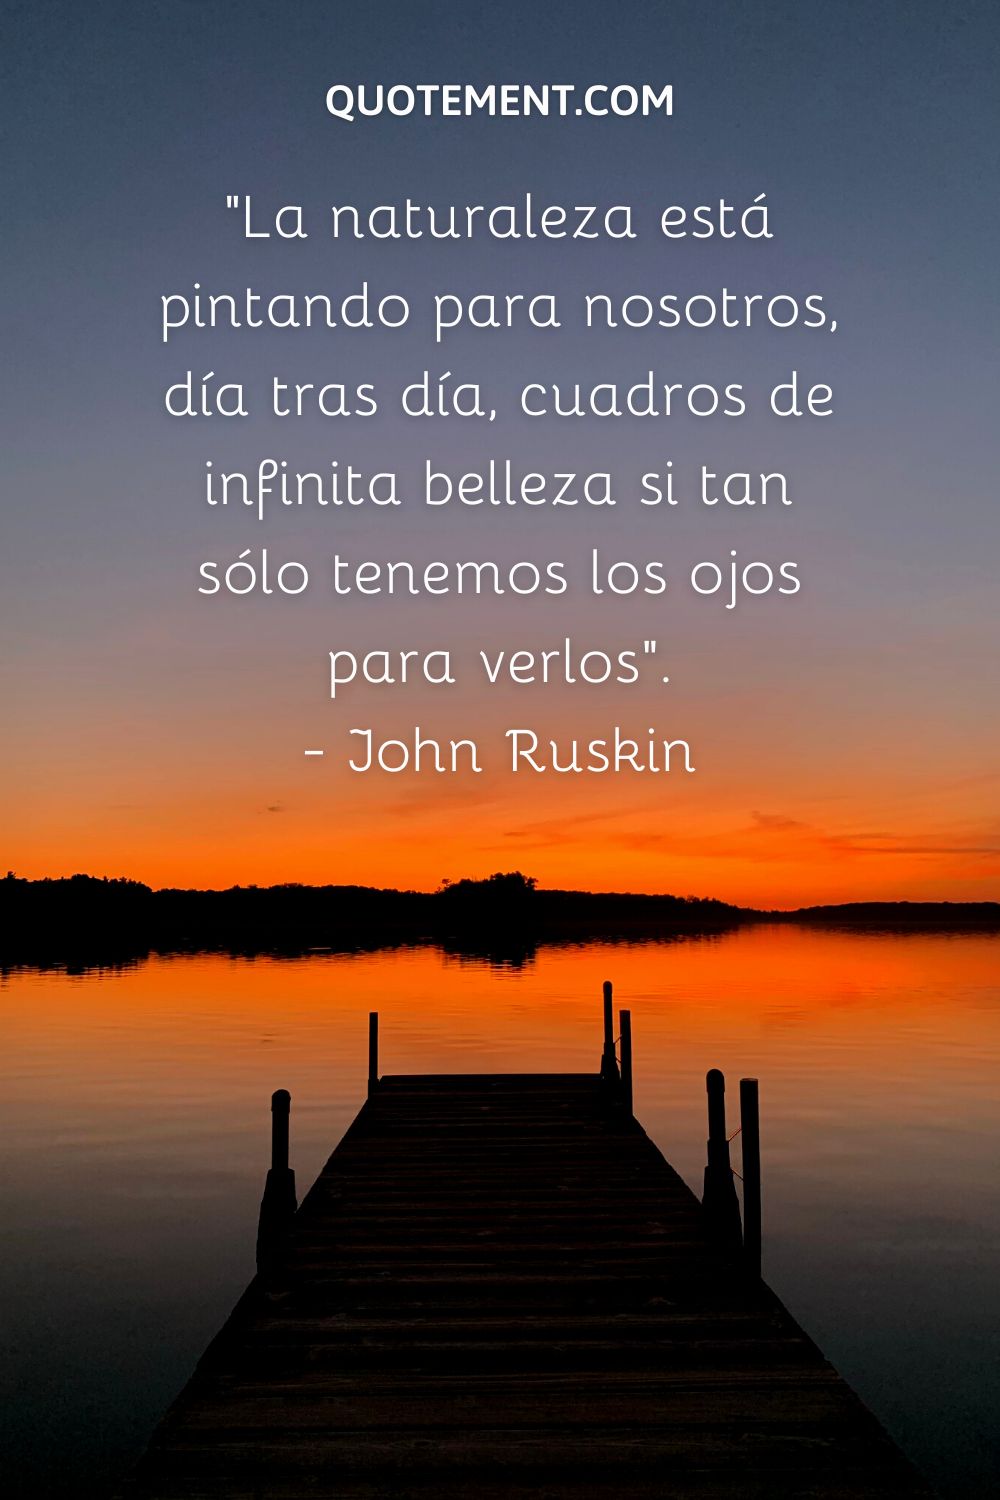 "La naturaleza está pintando para nosotros, día tras día, cuadros de infinita belleza si tan sólo tenemos los ojos para verlos". - John Ruskin